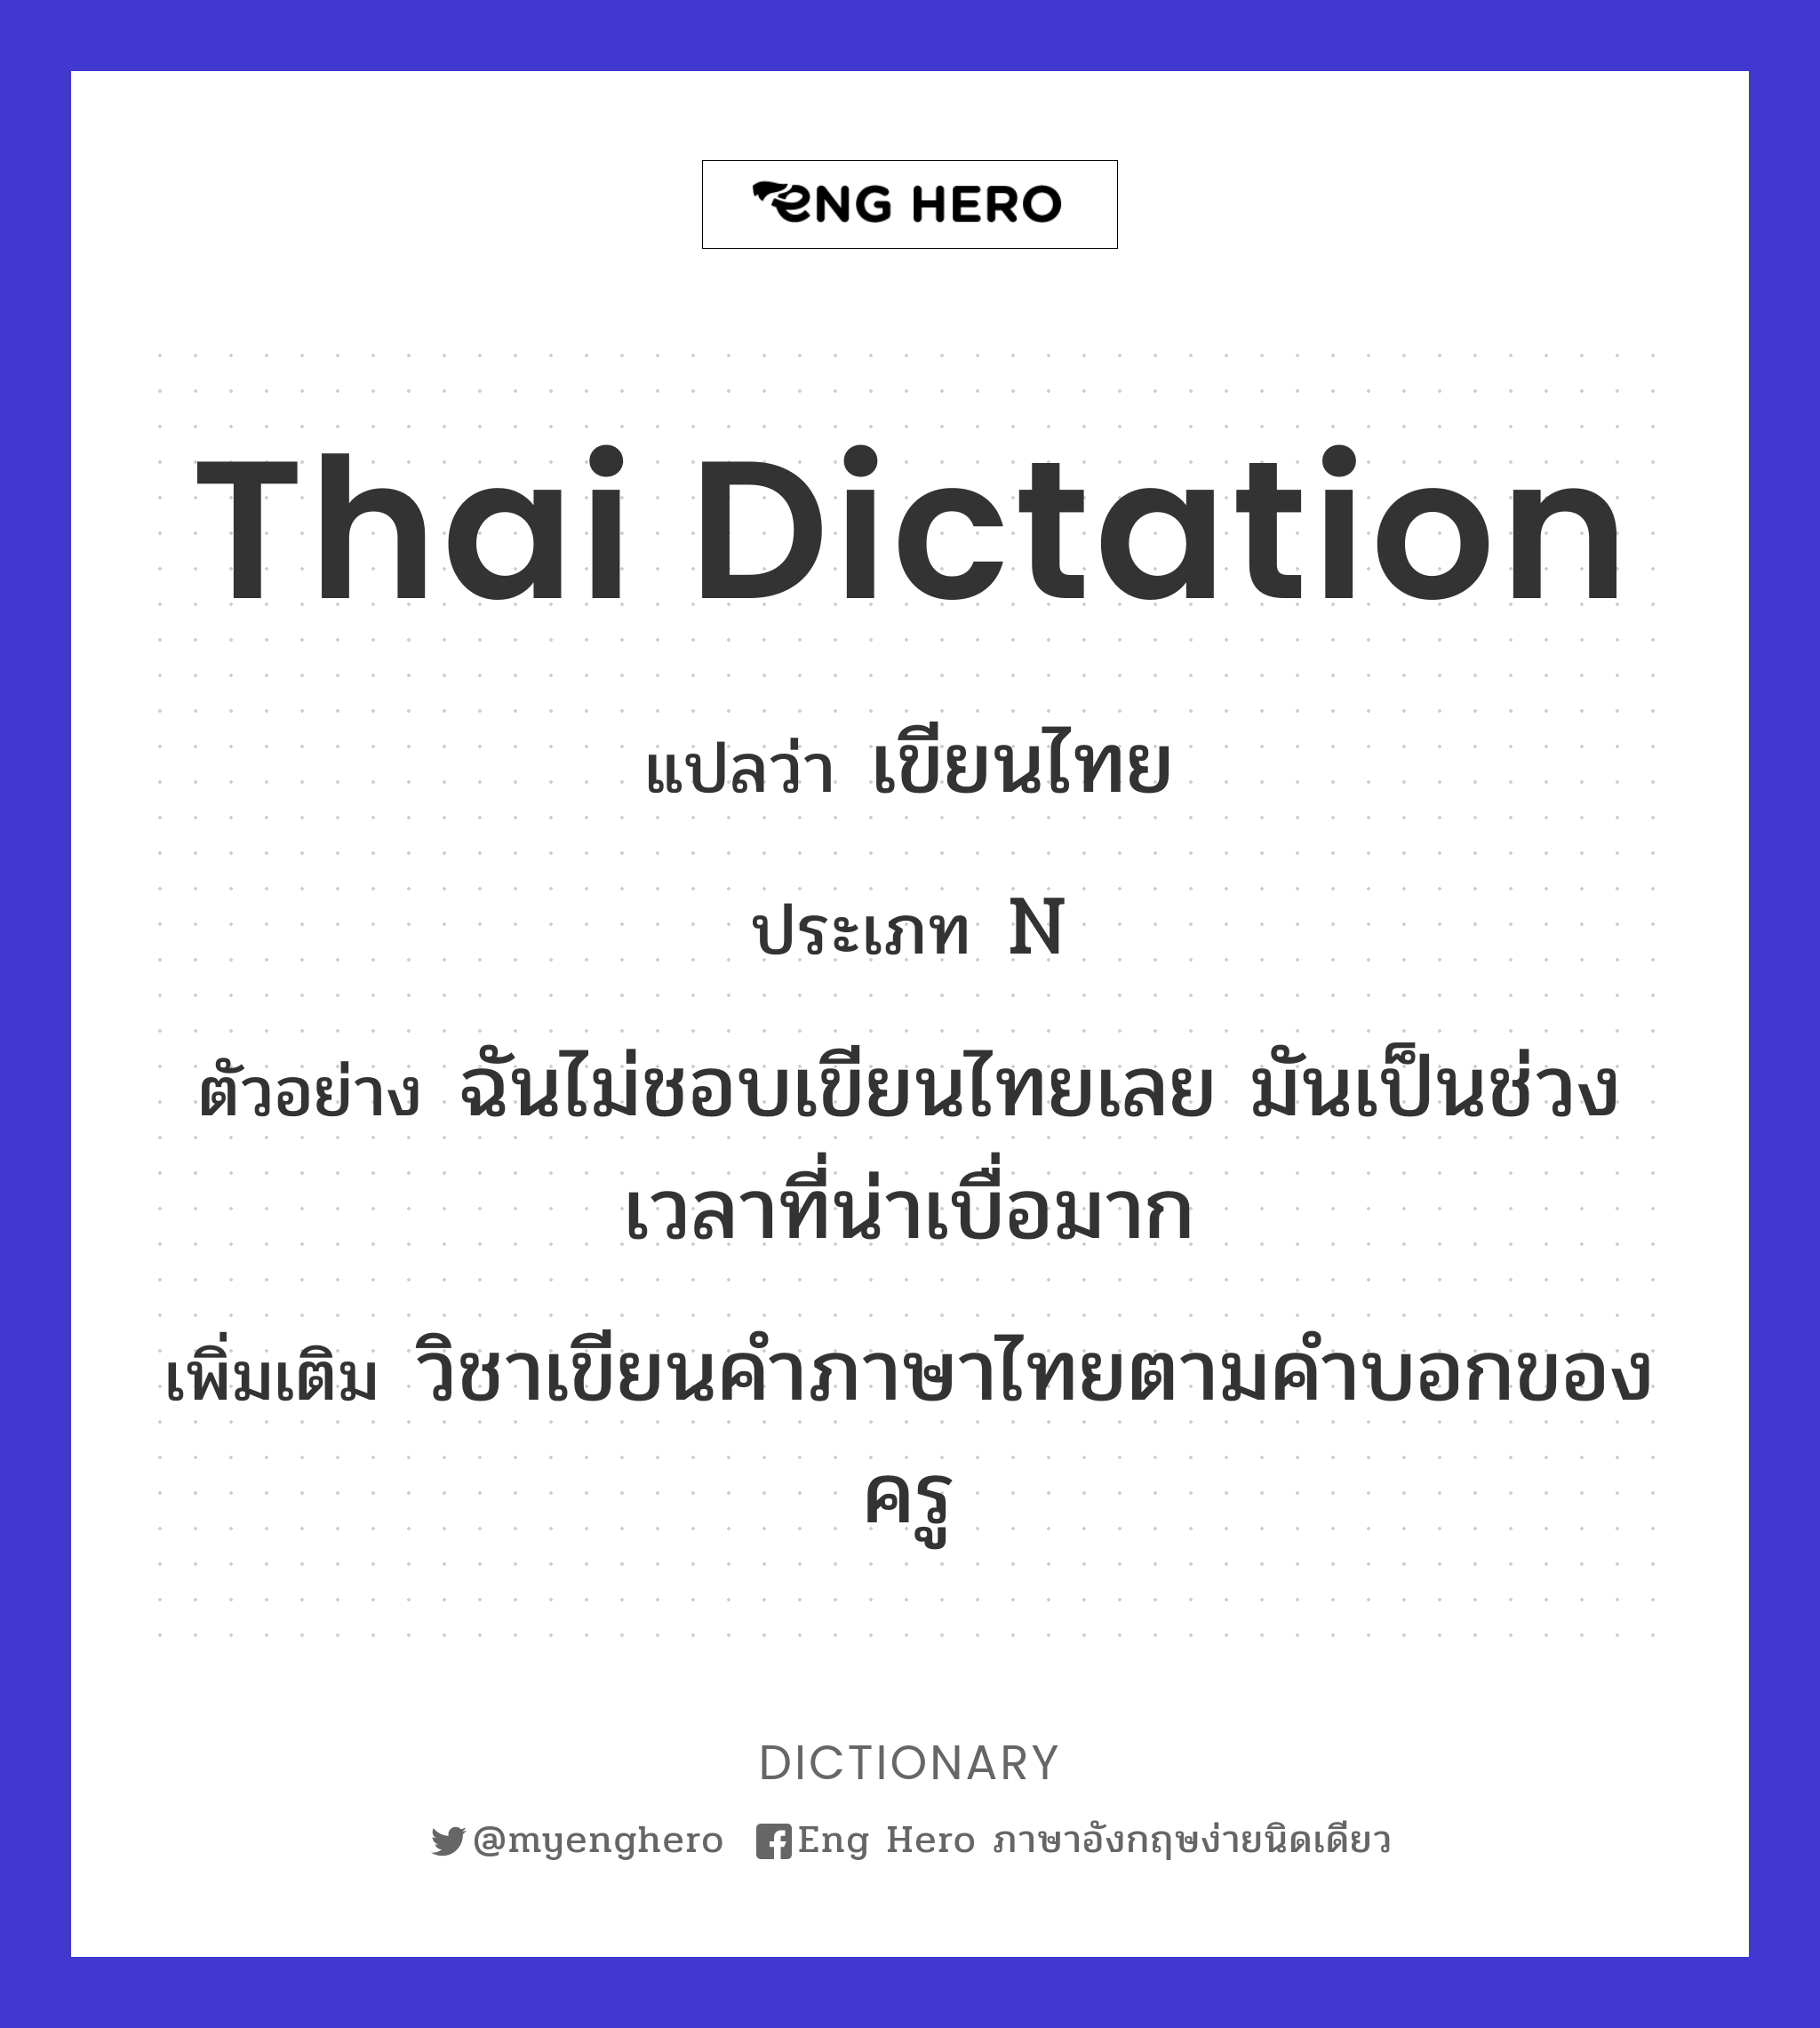 Thai dictation